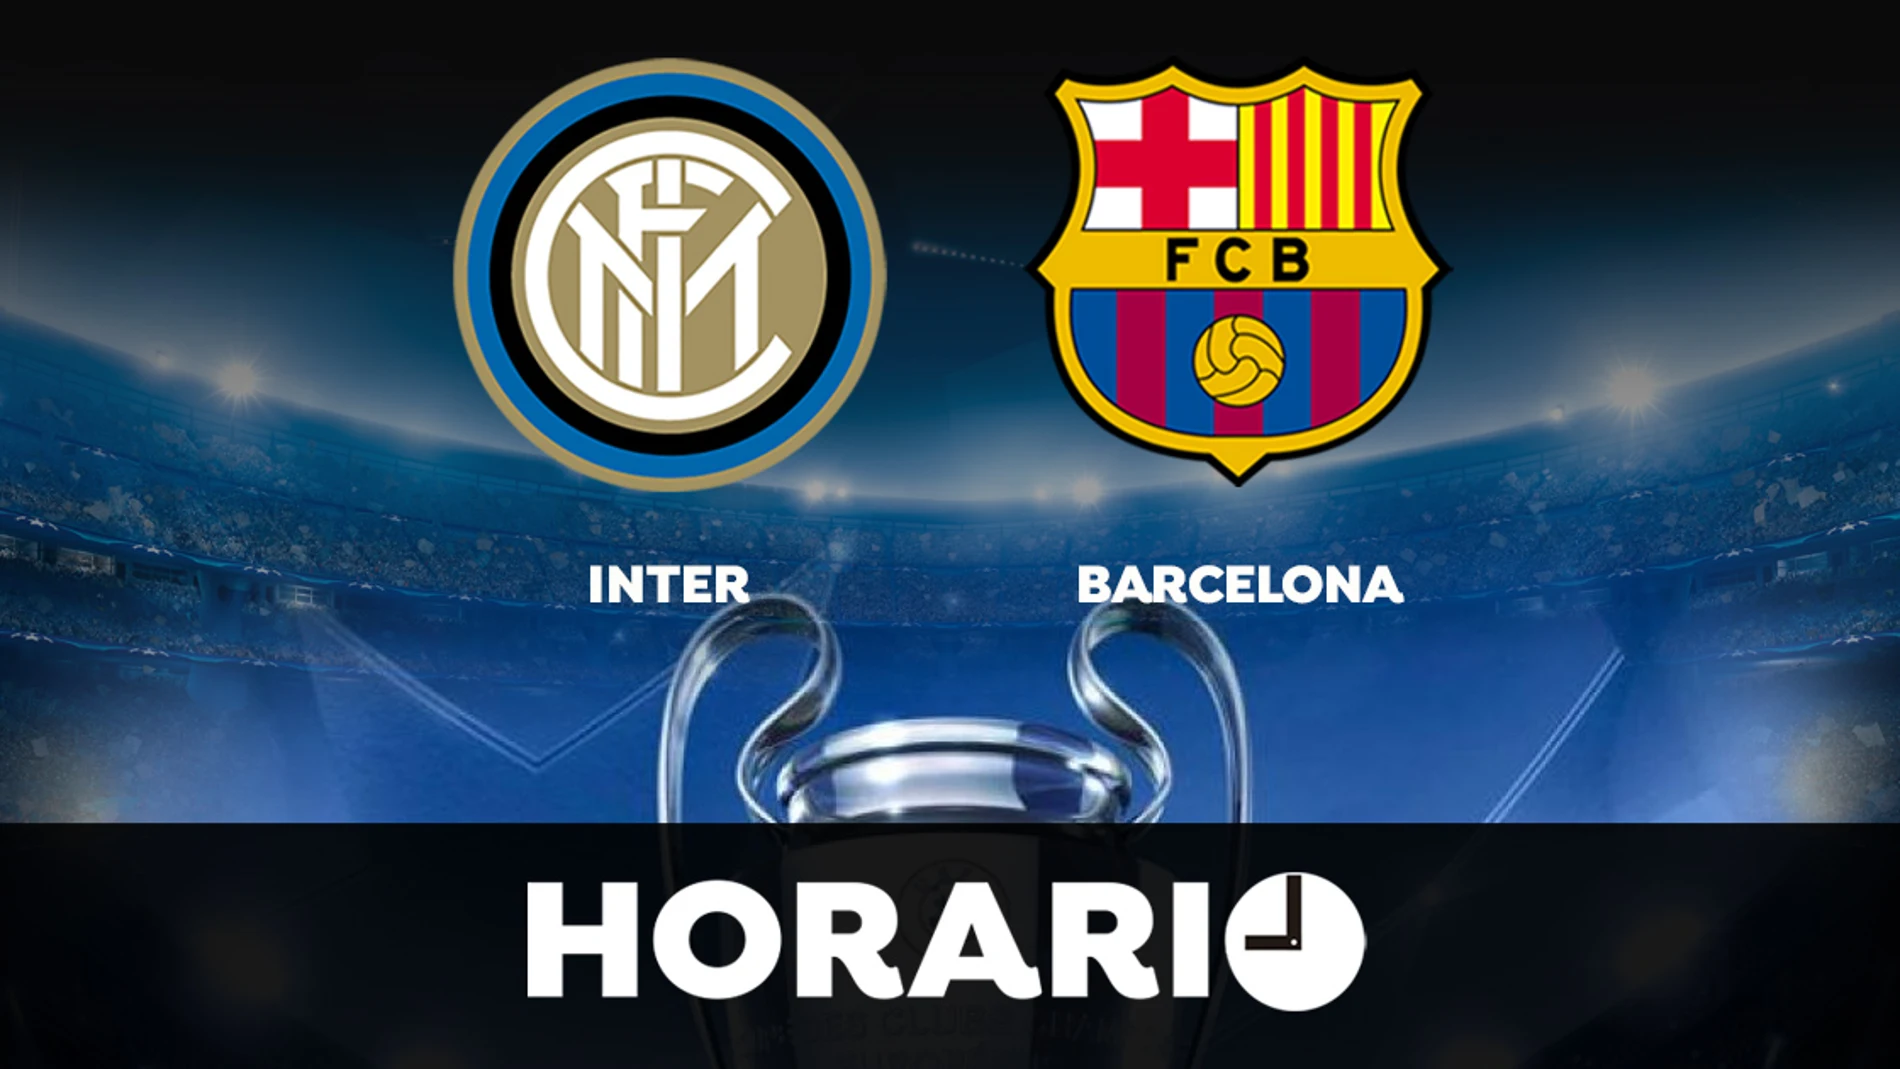 Inter de Milán - Barcelona: Horario y dónde ver el partido de Champions